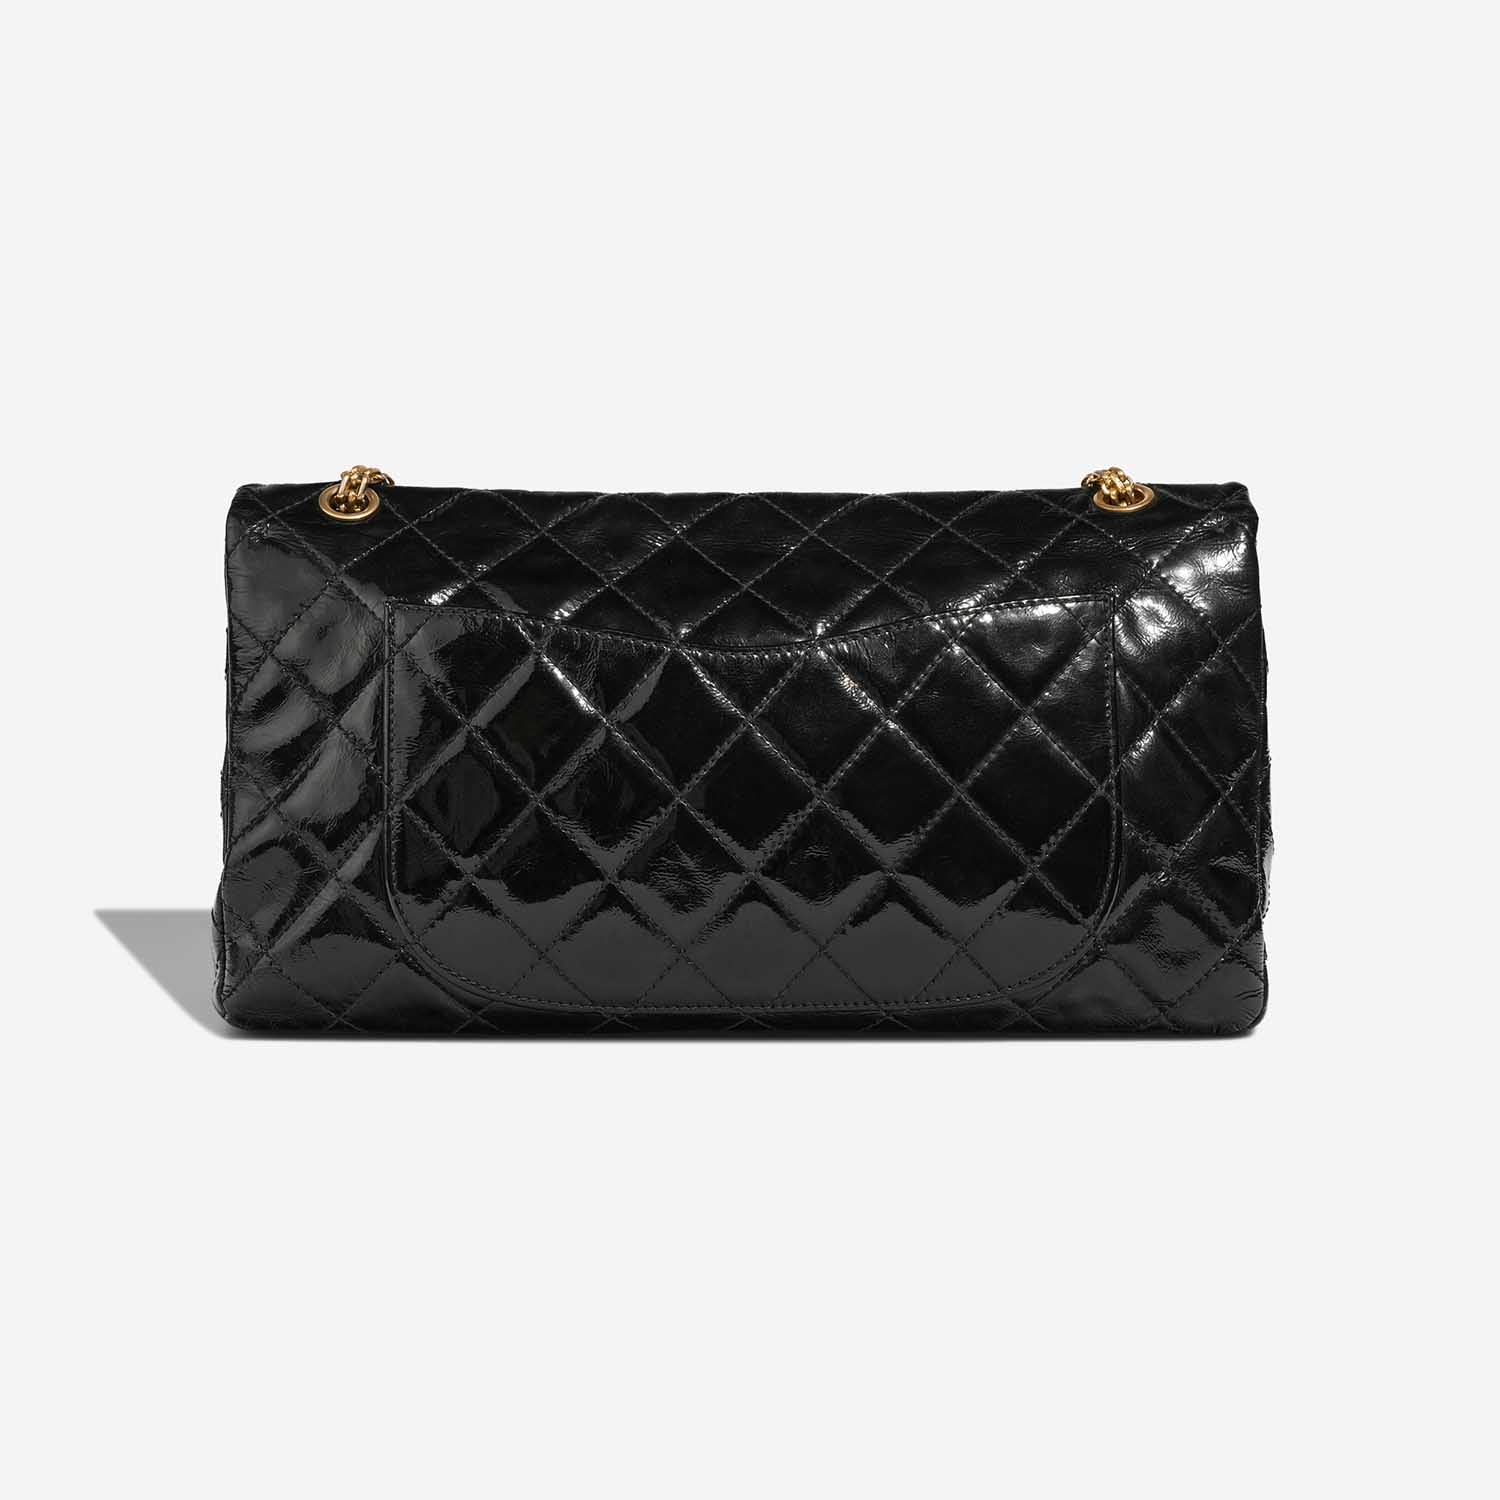 Chanel 255Reissue Black Back | Verkaufen Sie Ihre Designer-Tasche auf Saclab.com